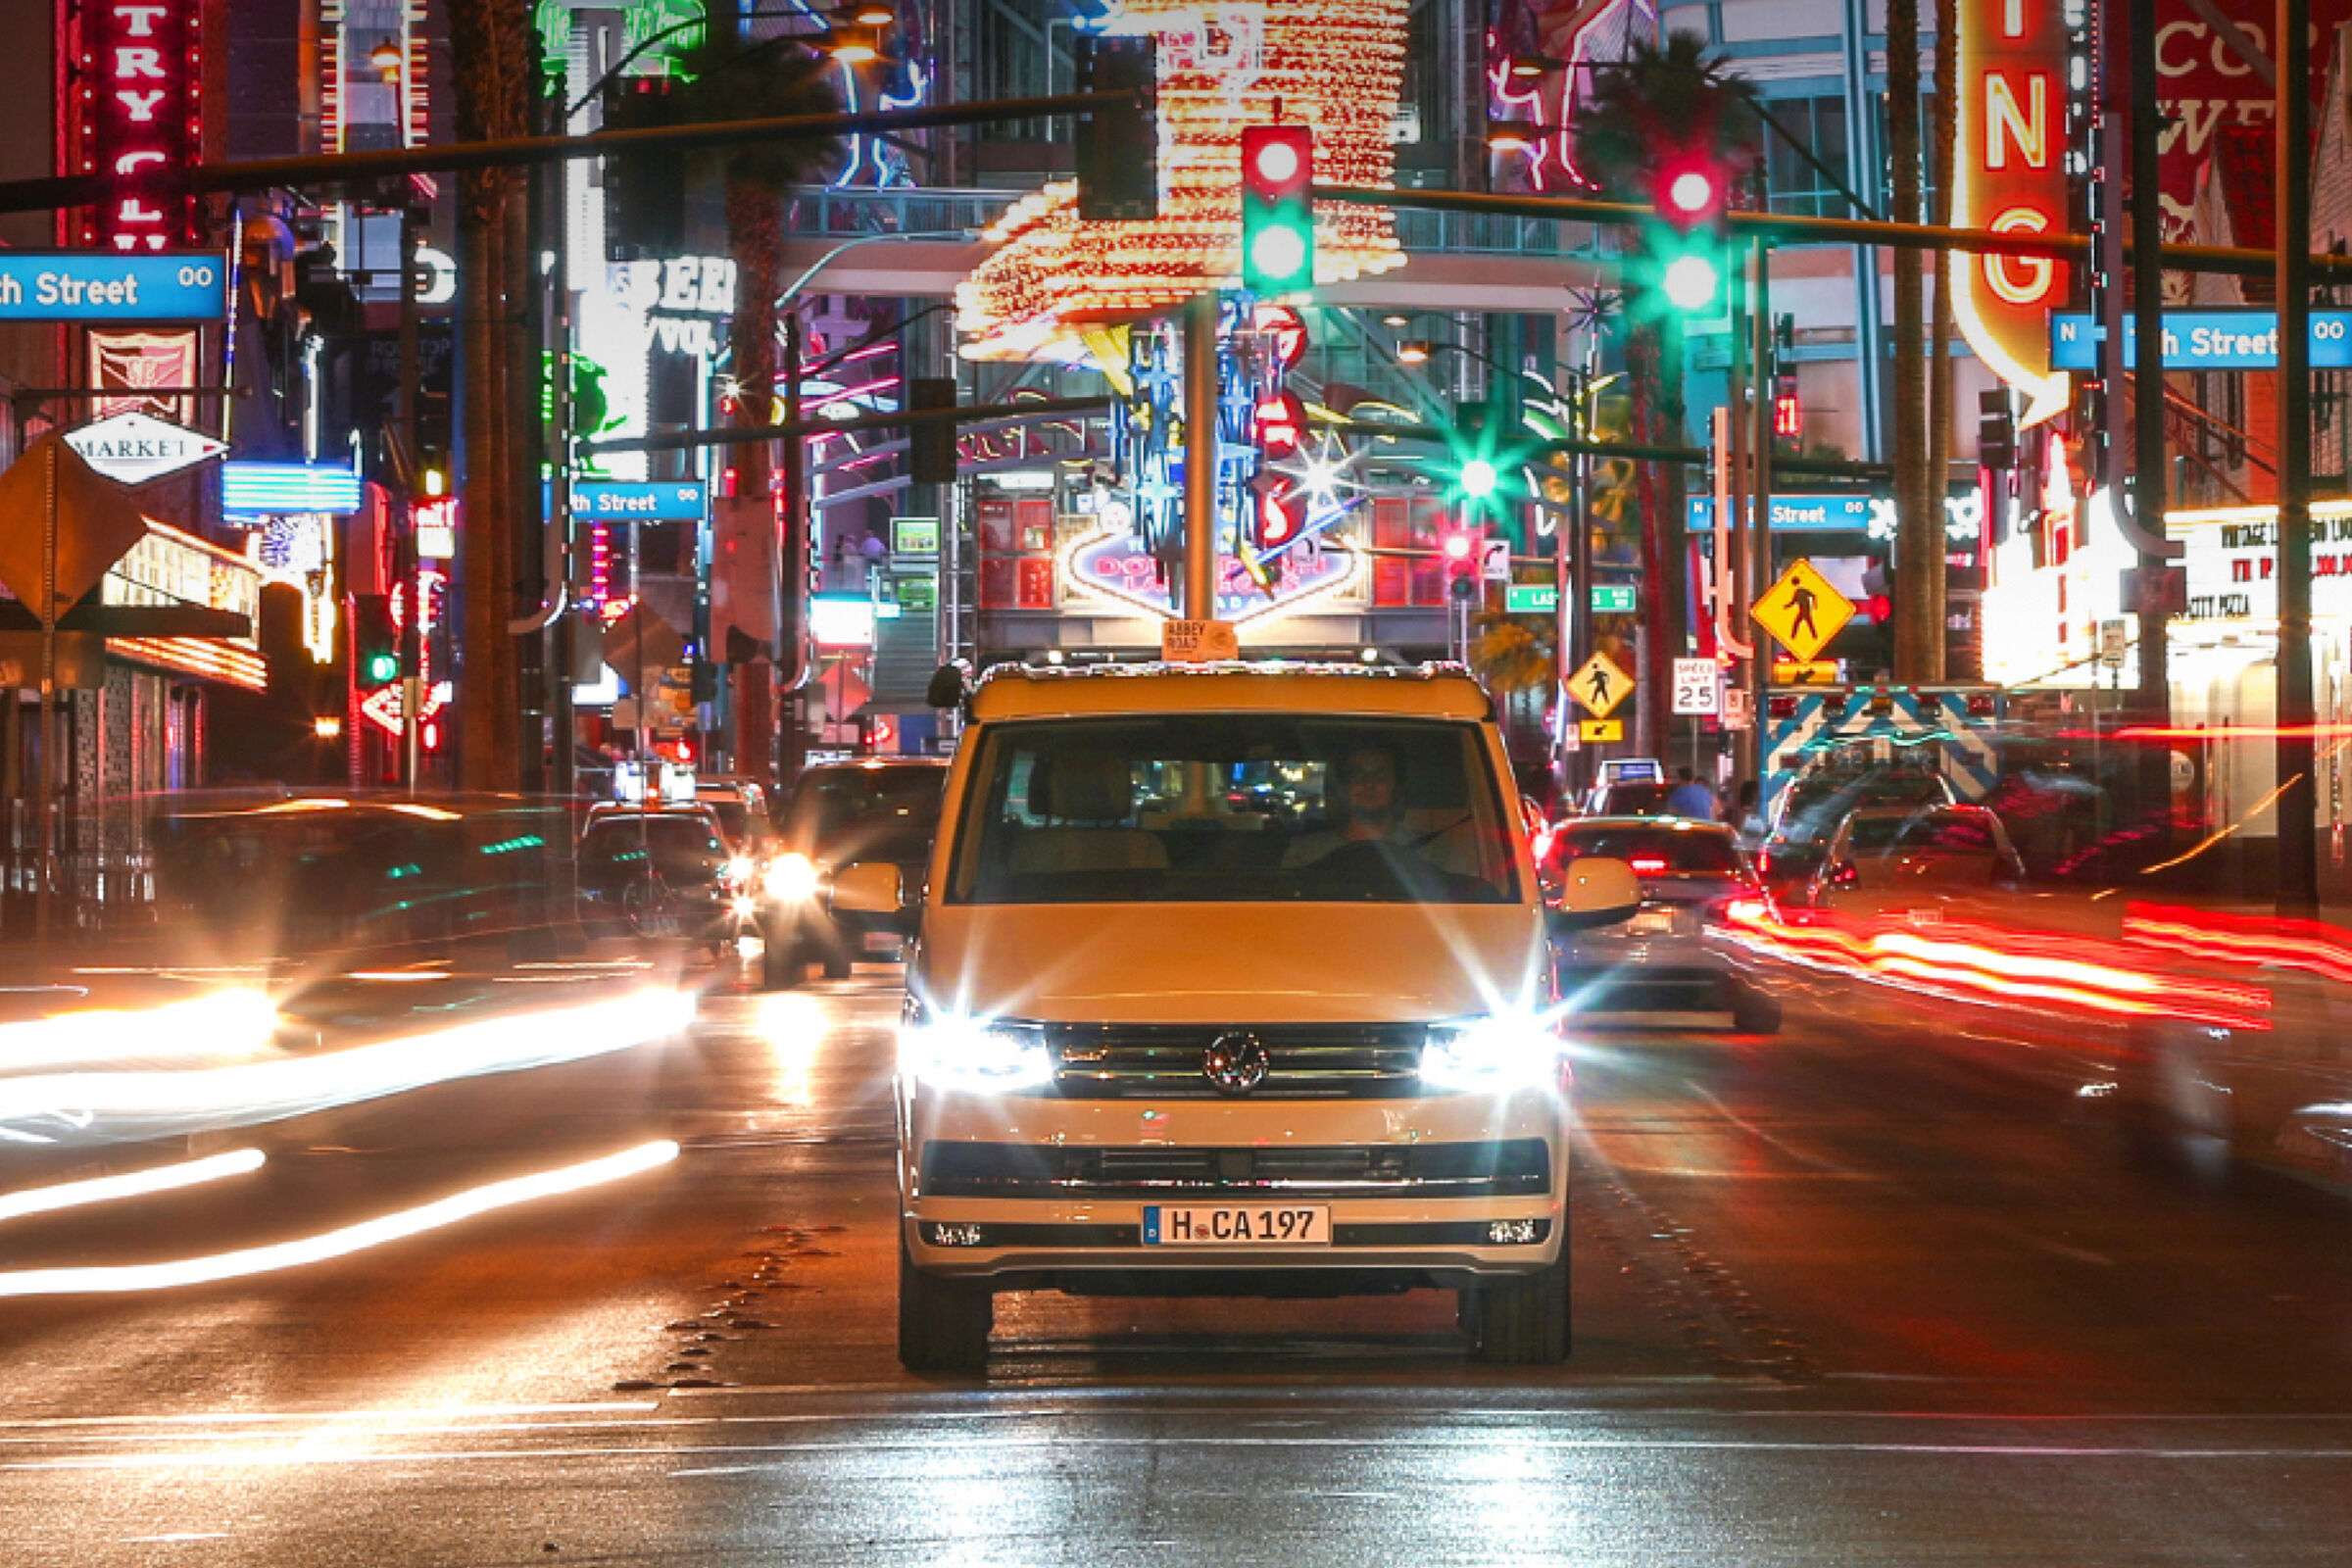 A California da Volkswagen Veículos Comerciais num dos centros urbanos californianos. Em seu redor estão vários letreiros luminosos coloridos.